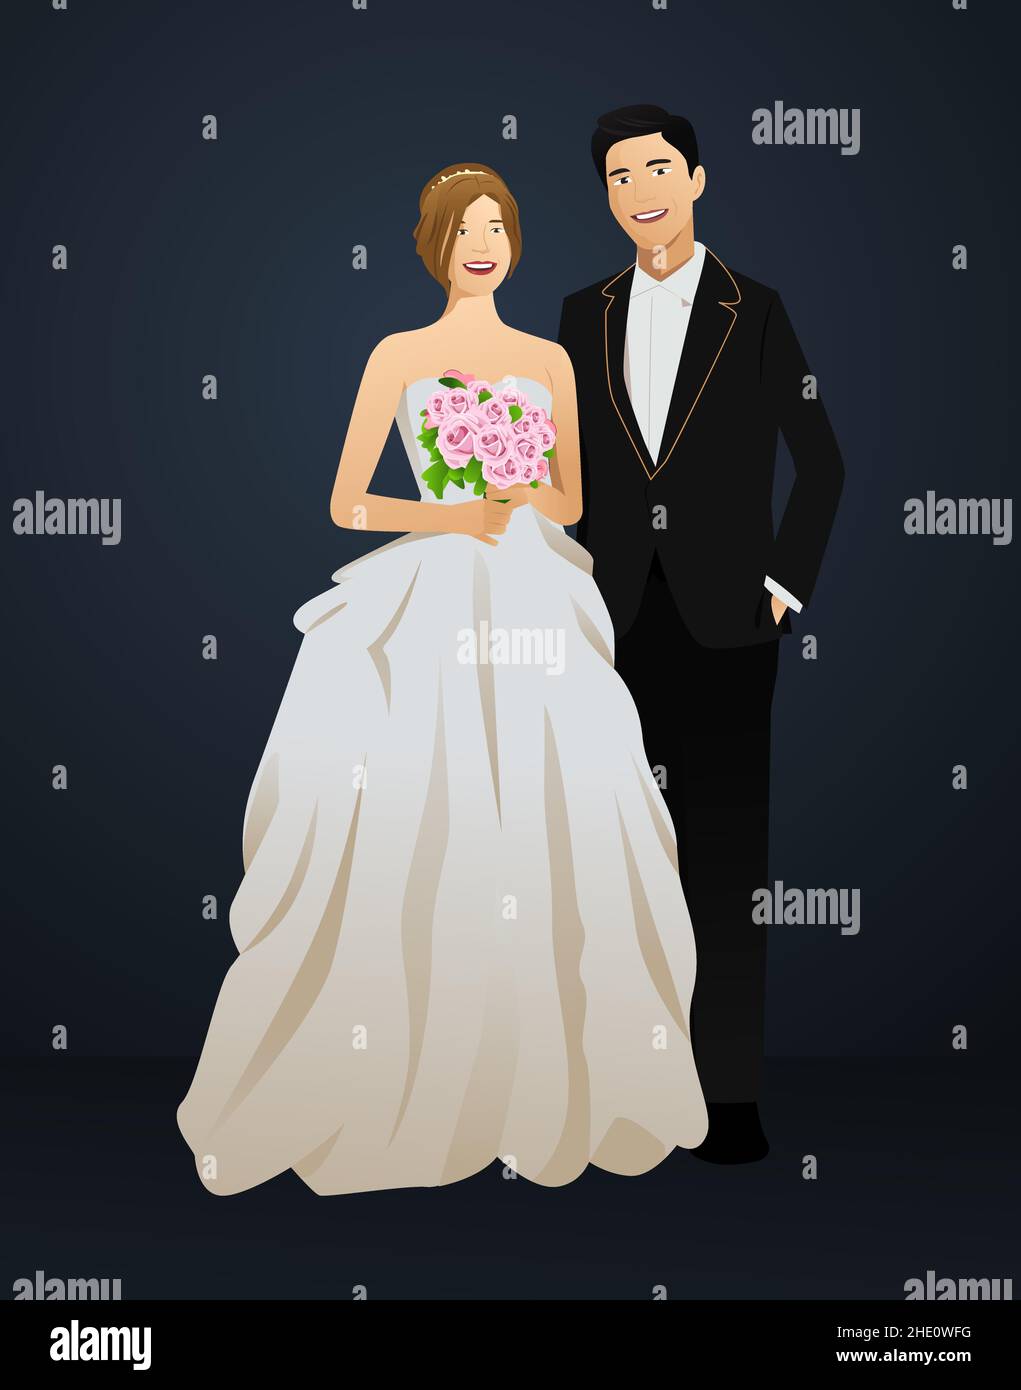 A vector illustration of a wedding couple Stock Vector